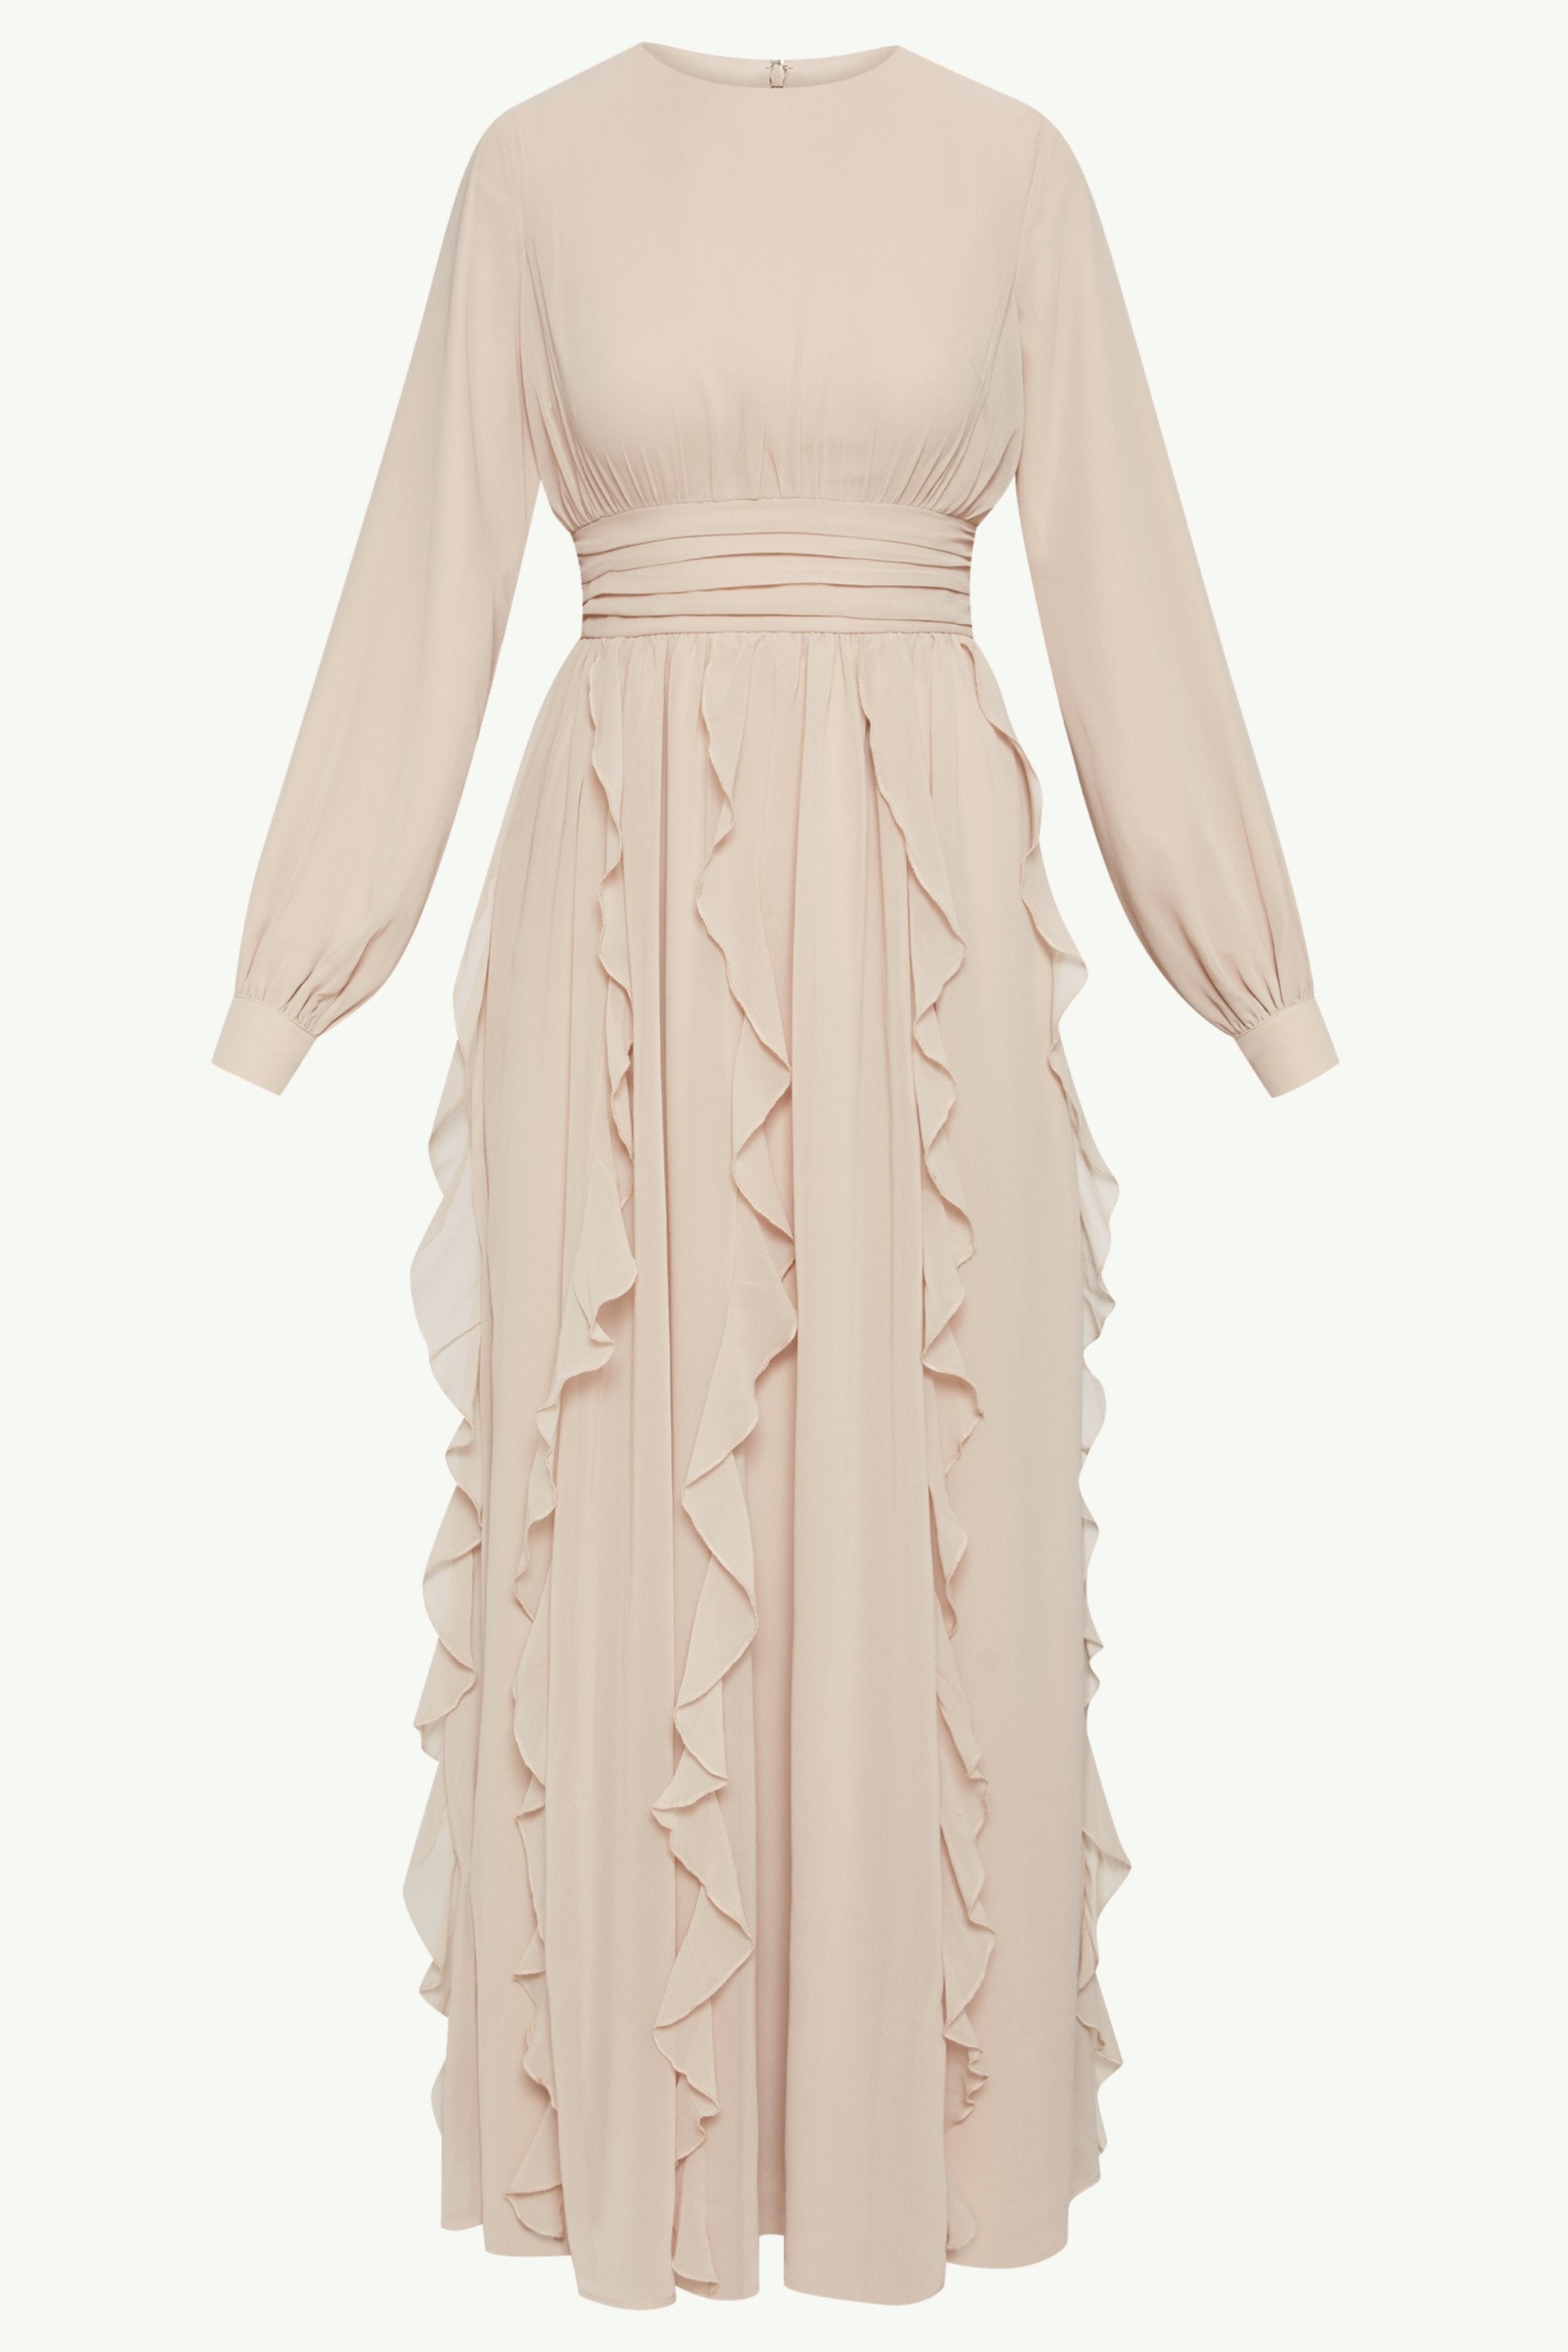 Nesreen Waterfall Chiffon Maxi Dress - Stone Clothing Veiled 